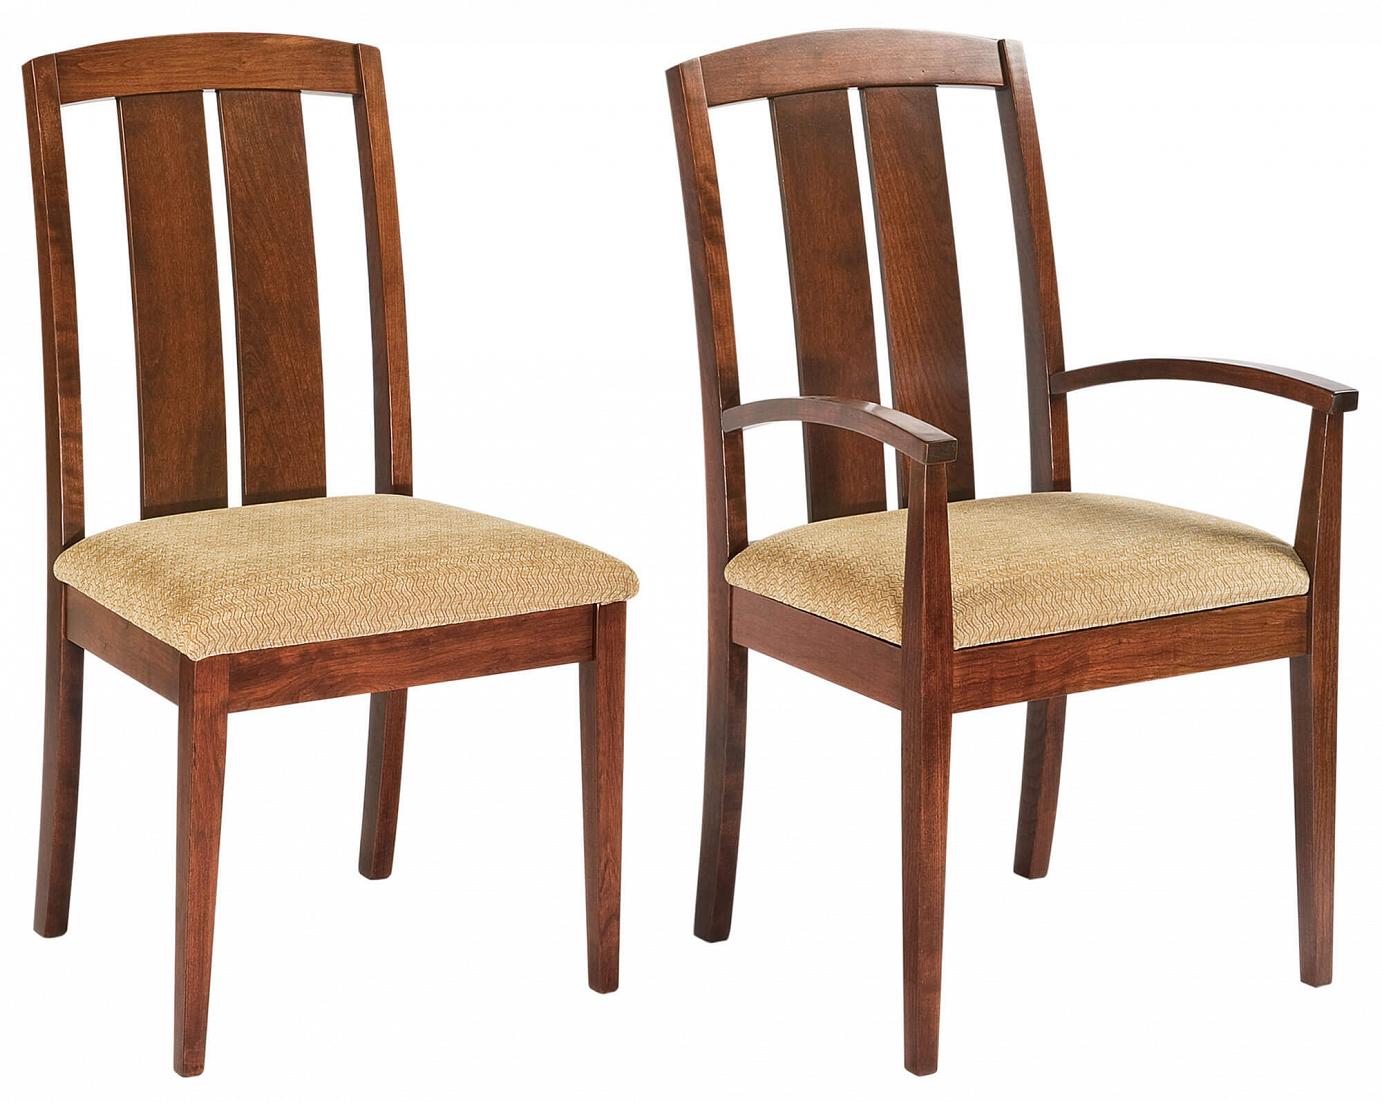 RH Yoder Lexford Chairs